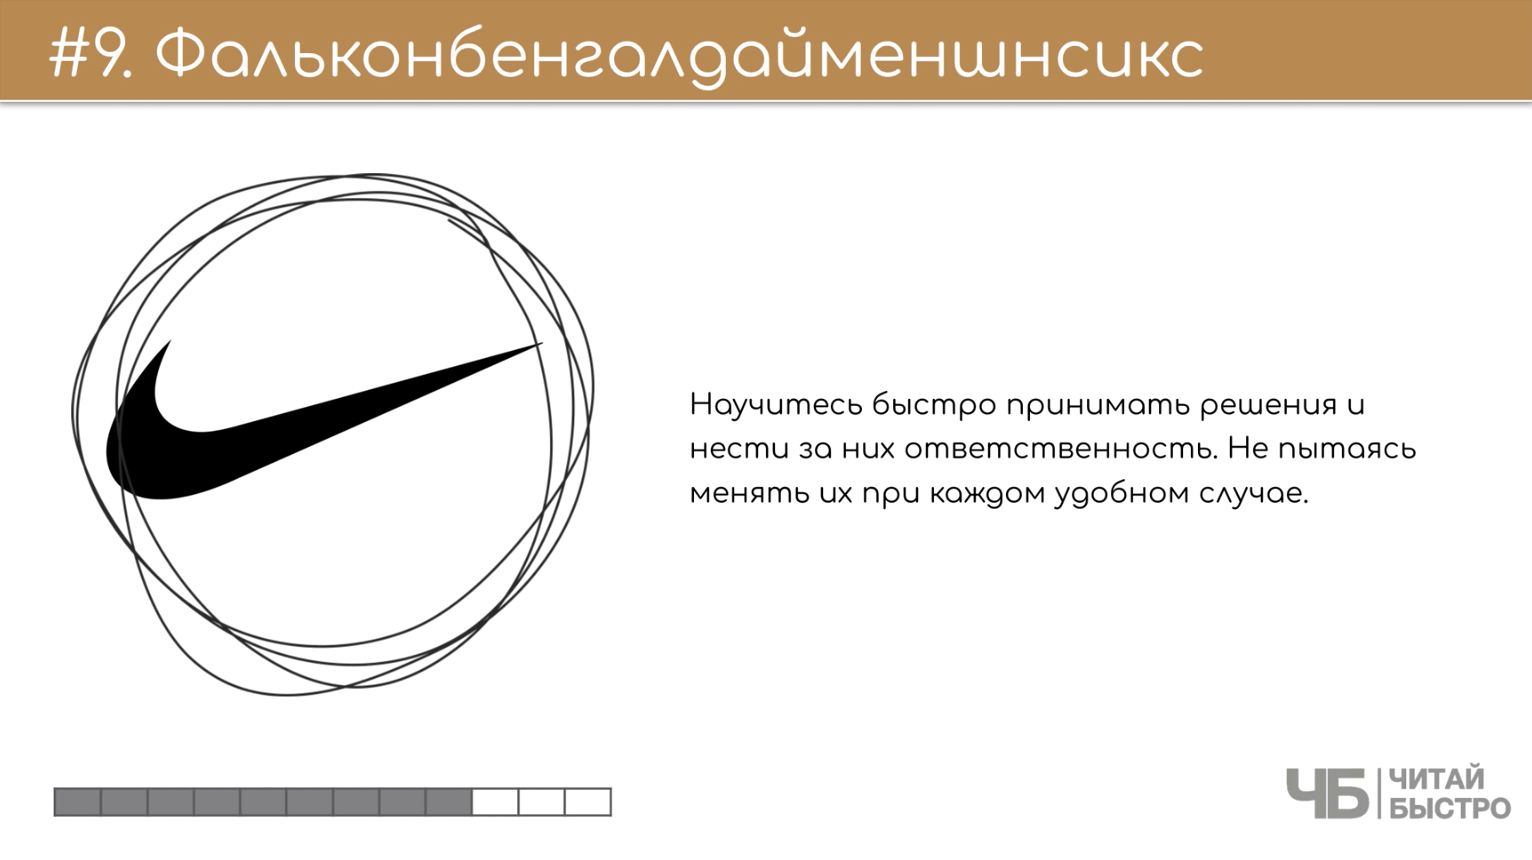 На этом слайде изображен тезис «фальконбенгалдайменшнсикс» и иллюстрация эмблемы Nike.